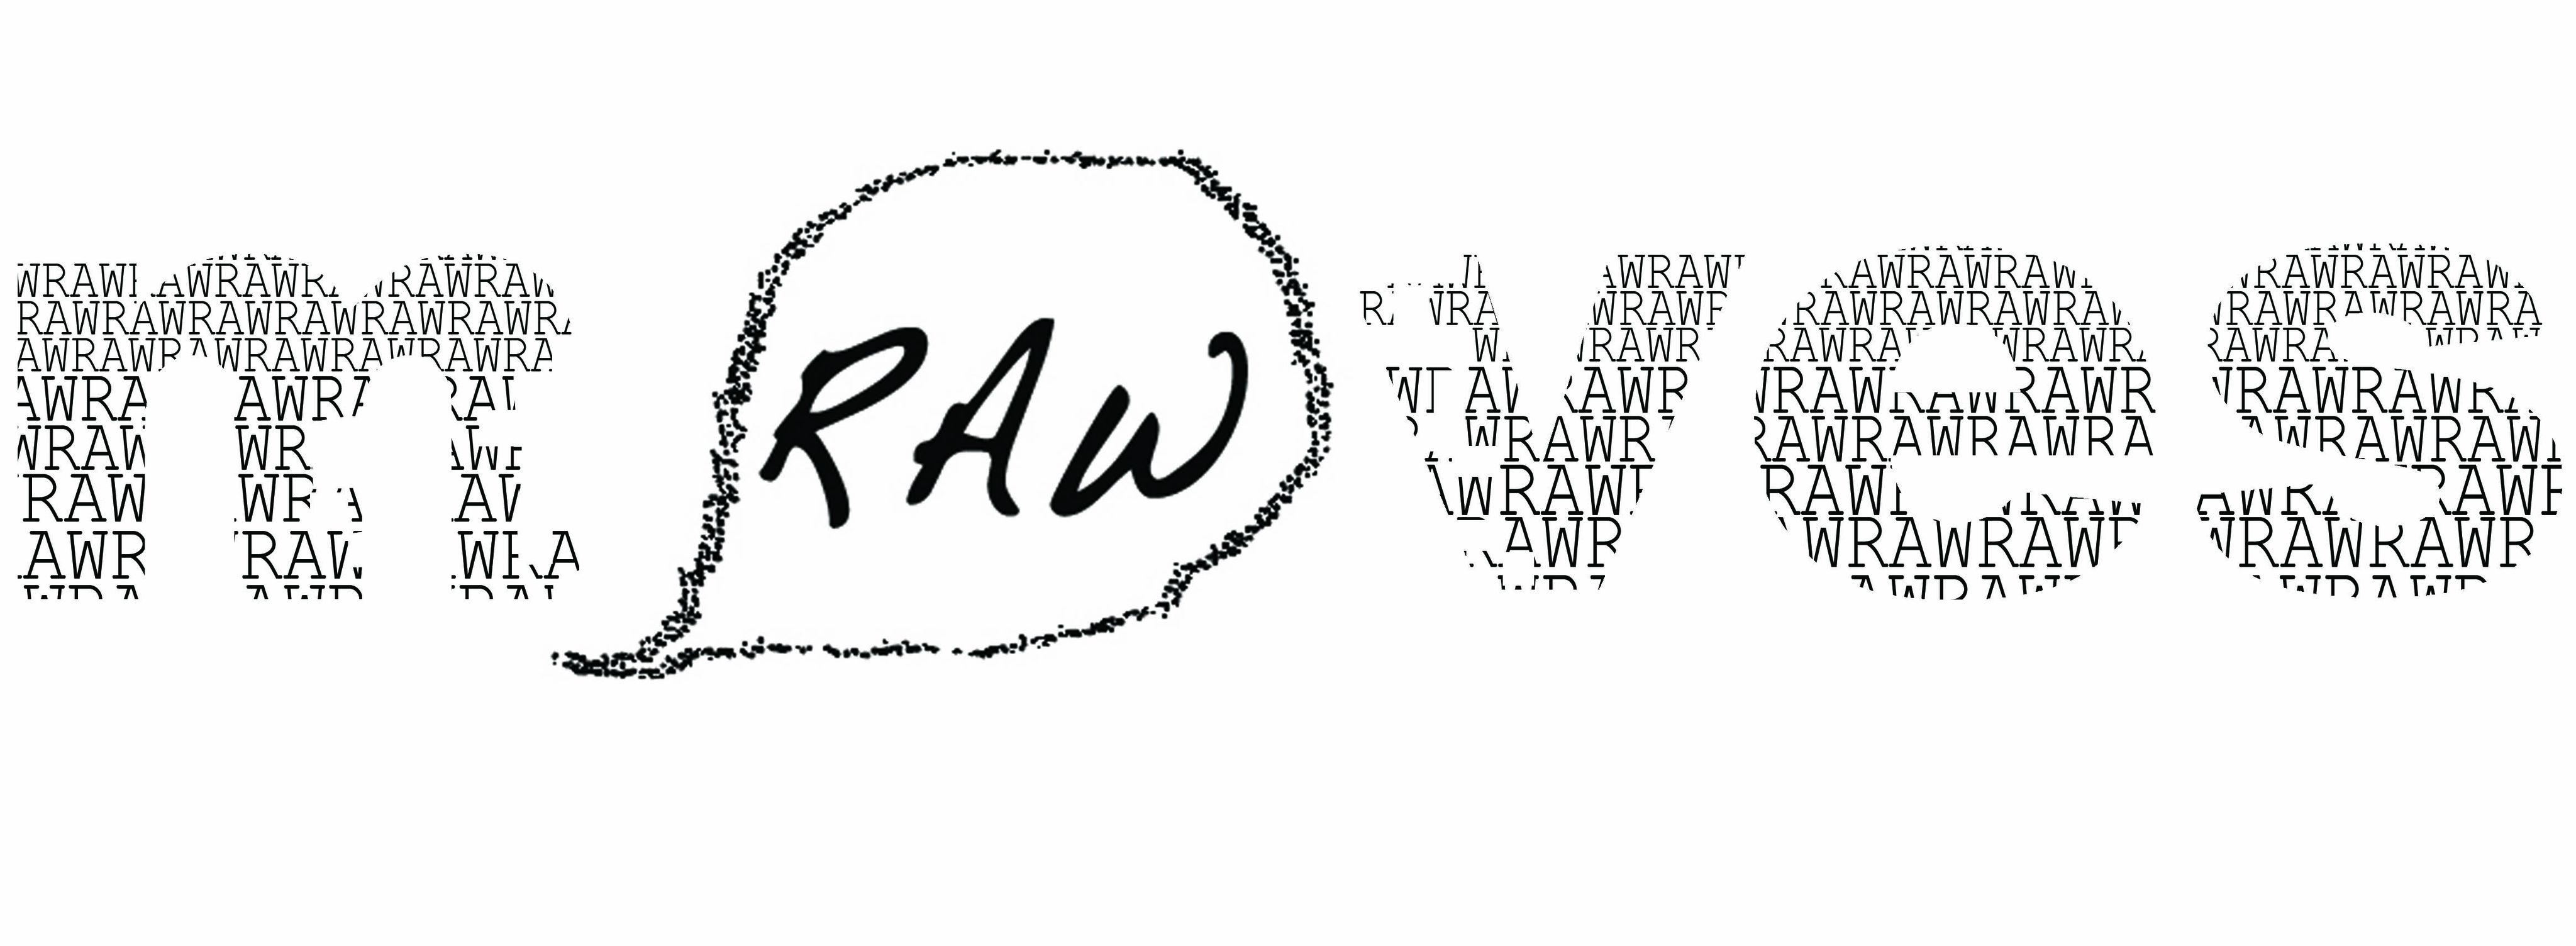 Raw Moves Ltd